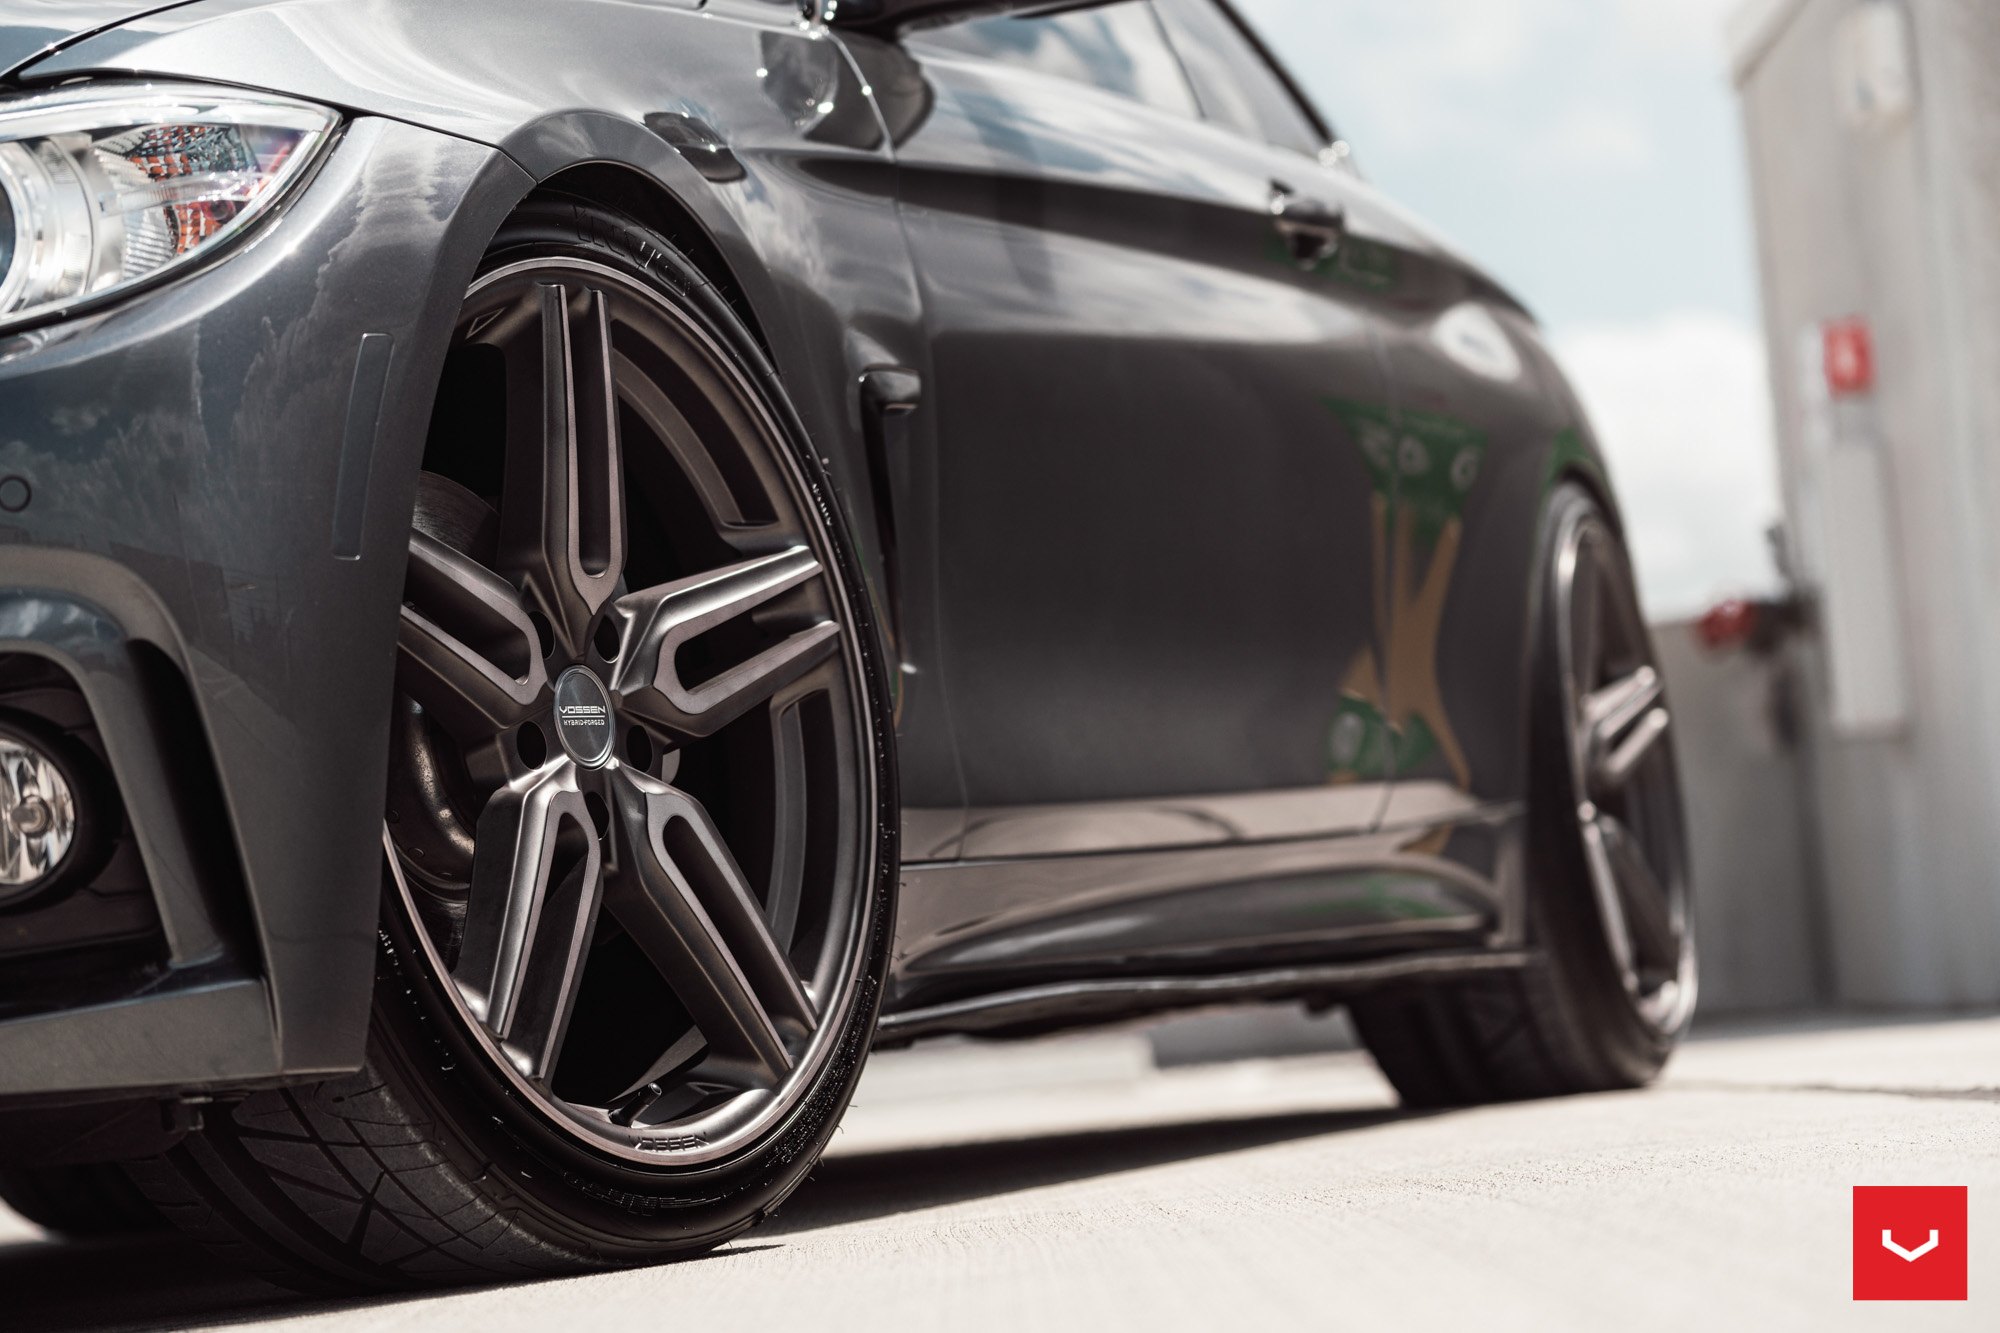 Vossen Hybrid Forged Rims on Black BMW 4-Series - Photo by Vossen